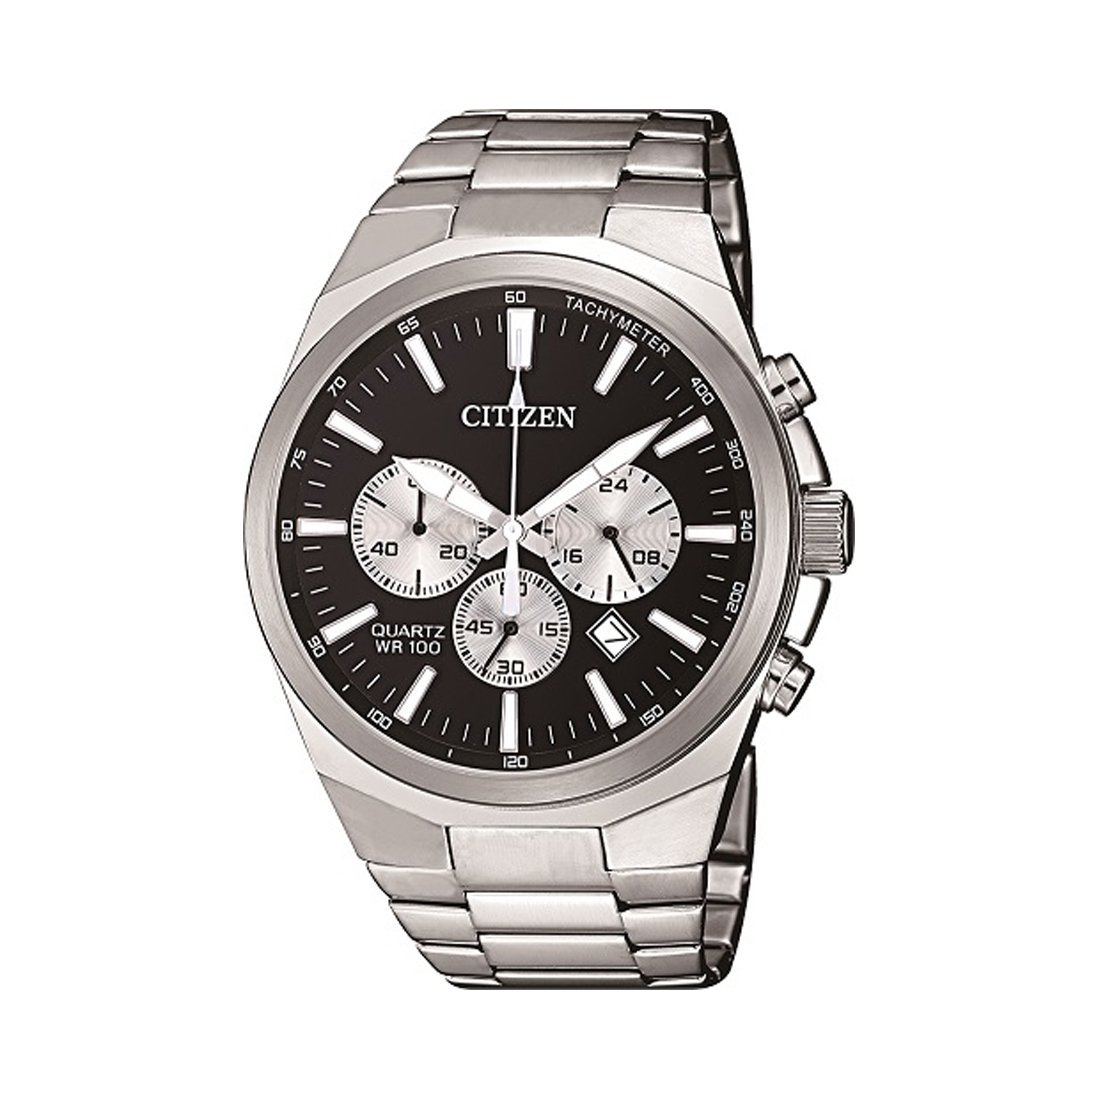 Citizen Men's Chronograph Silver Stainless-Steel Watch Model AN8170-59E Watches Citizen 